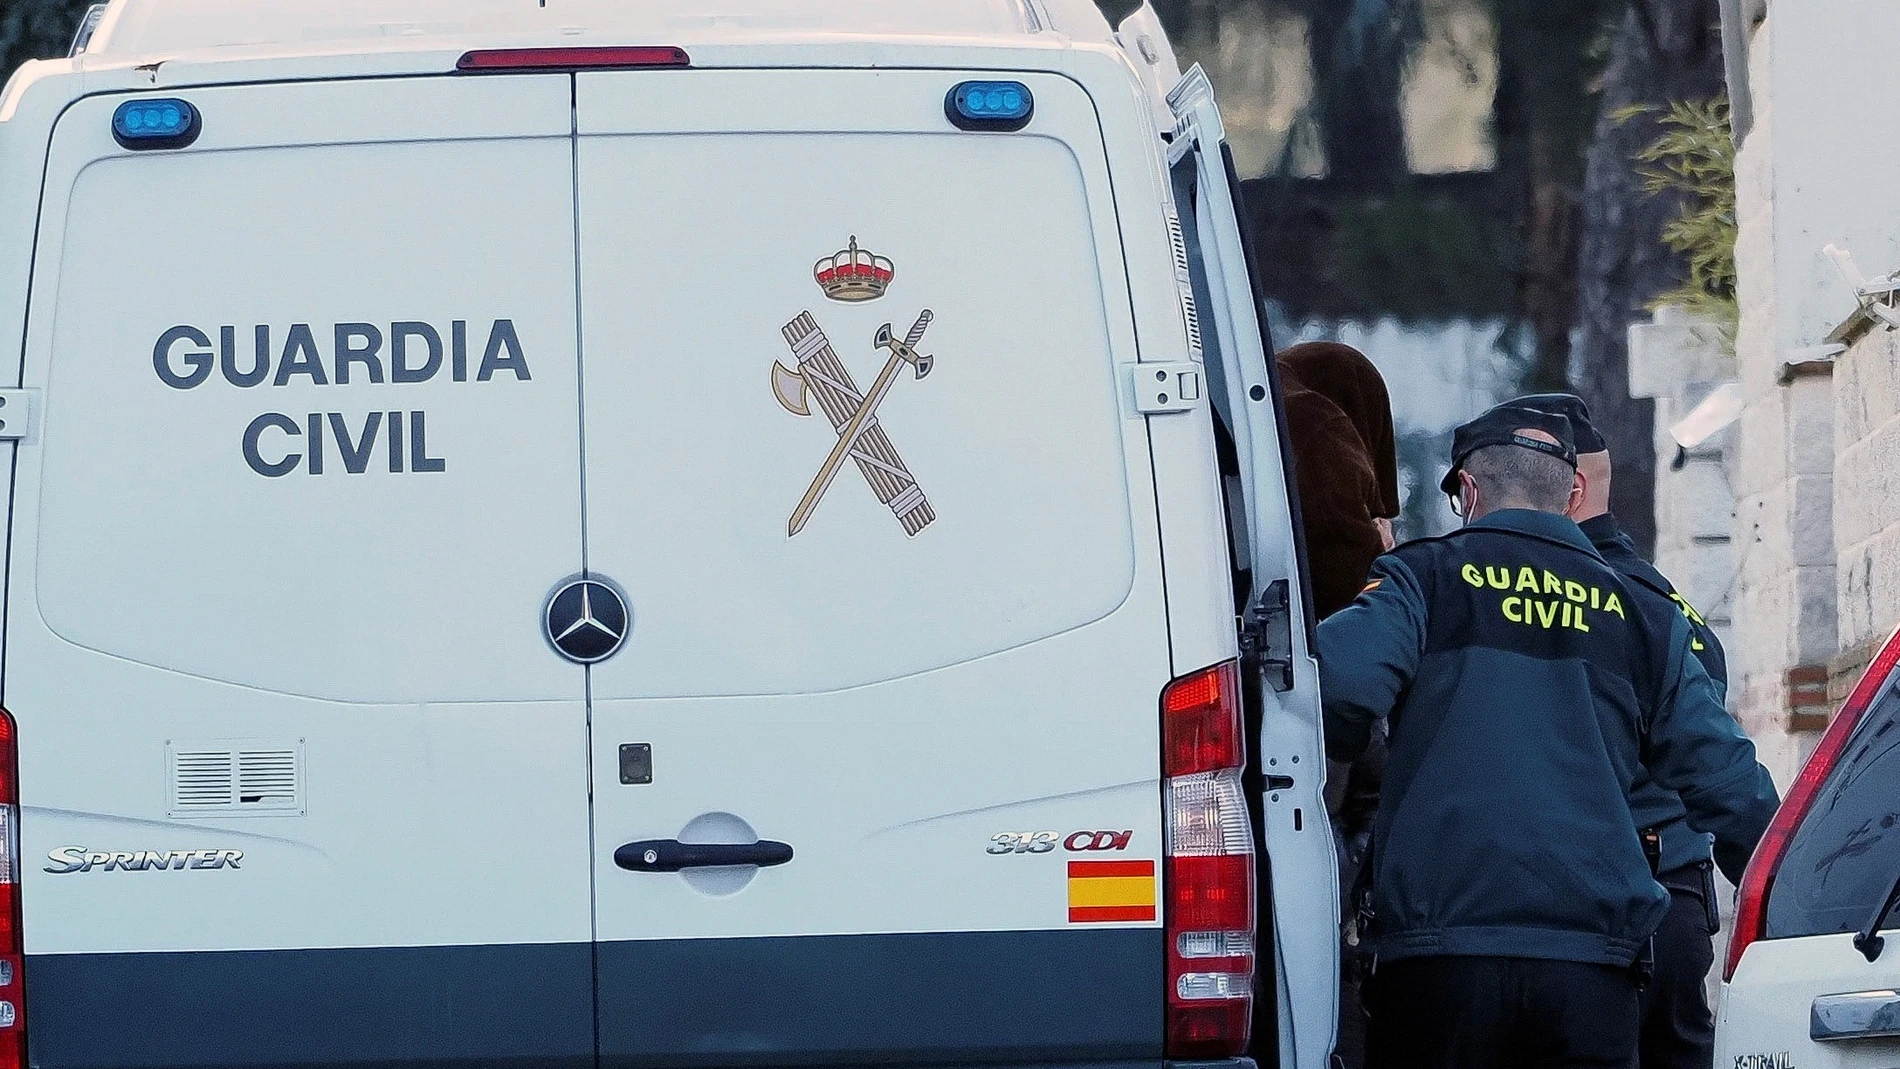 Imagen de Ramón 'El Manitas' subiendo a un furgón de la Guardia Civil